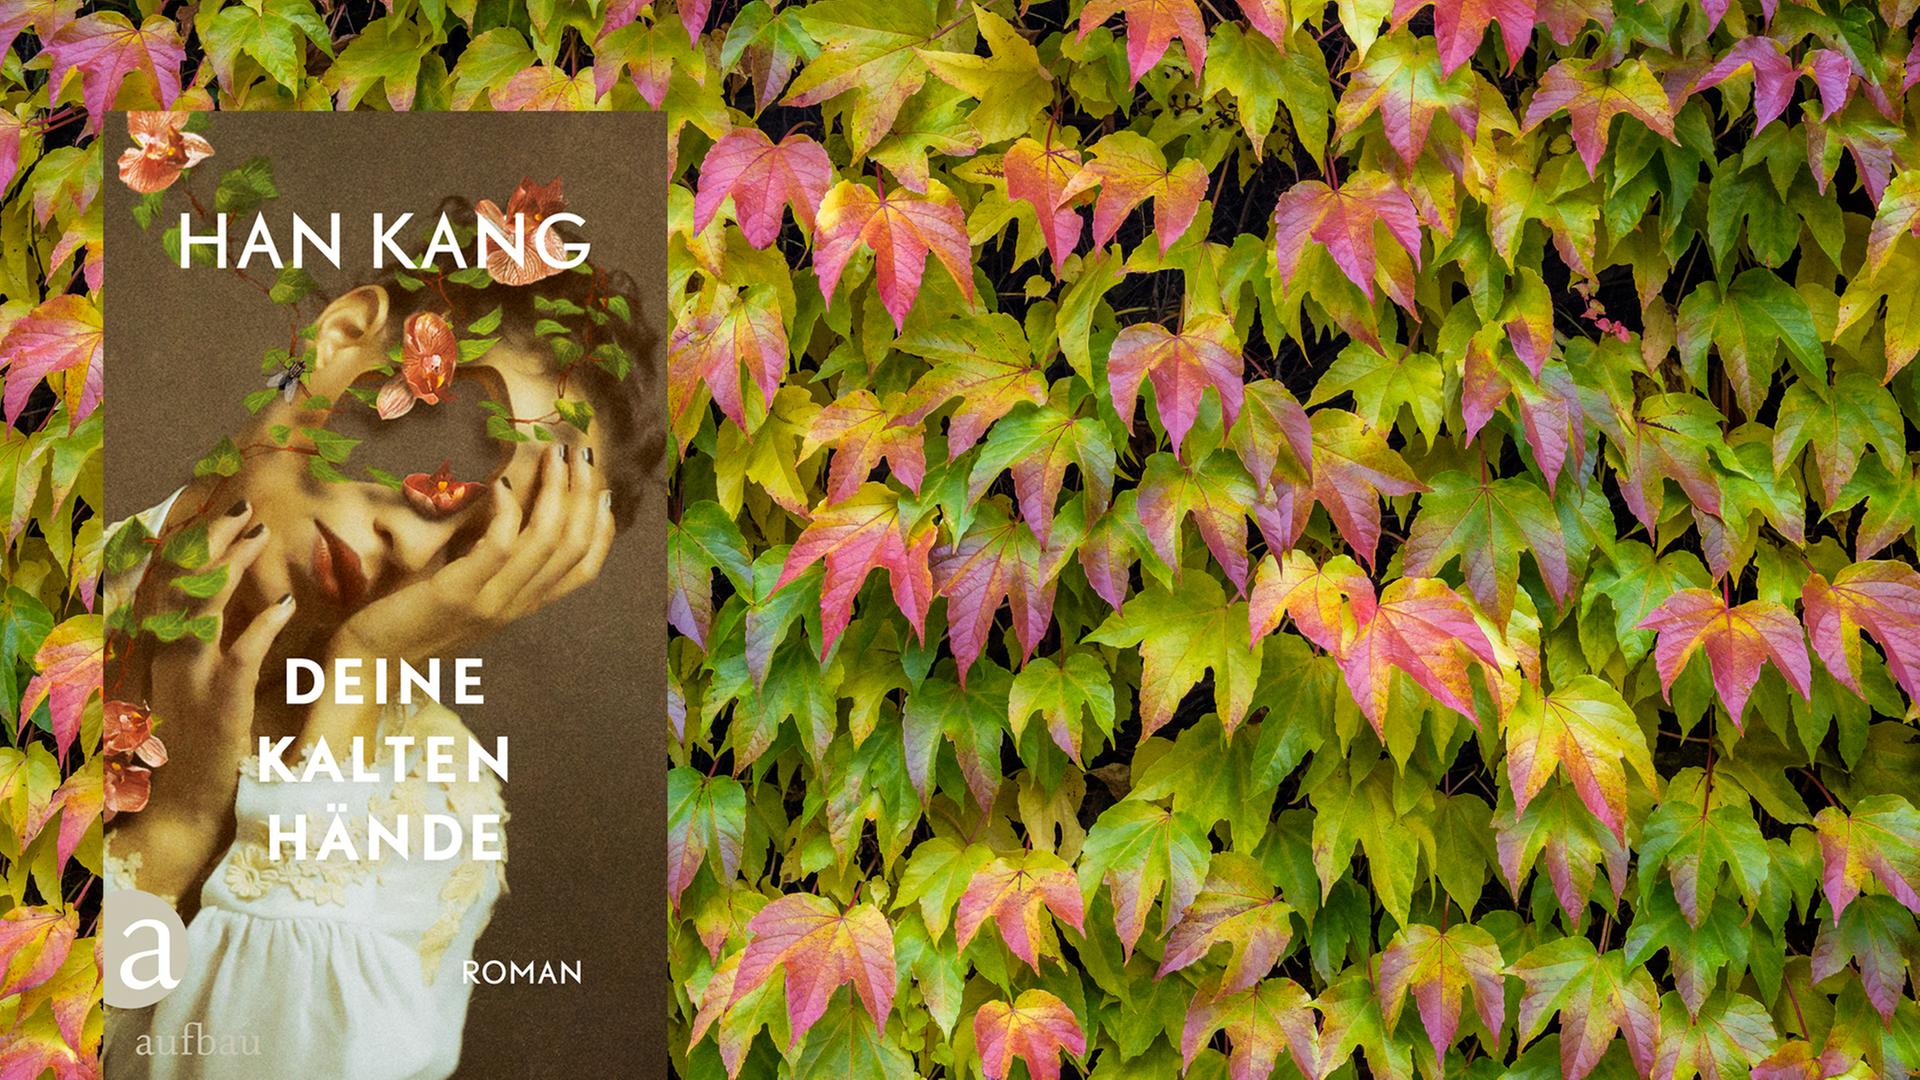 Buchcover von Han Kangs "Deine kalten Hände" vor Hintergrund.